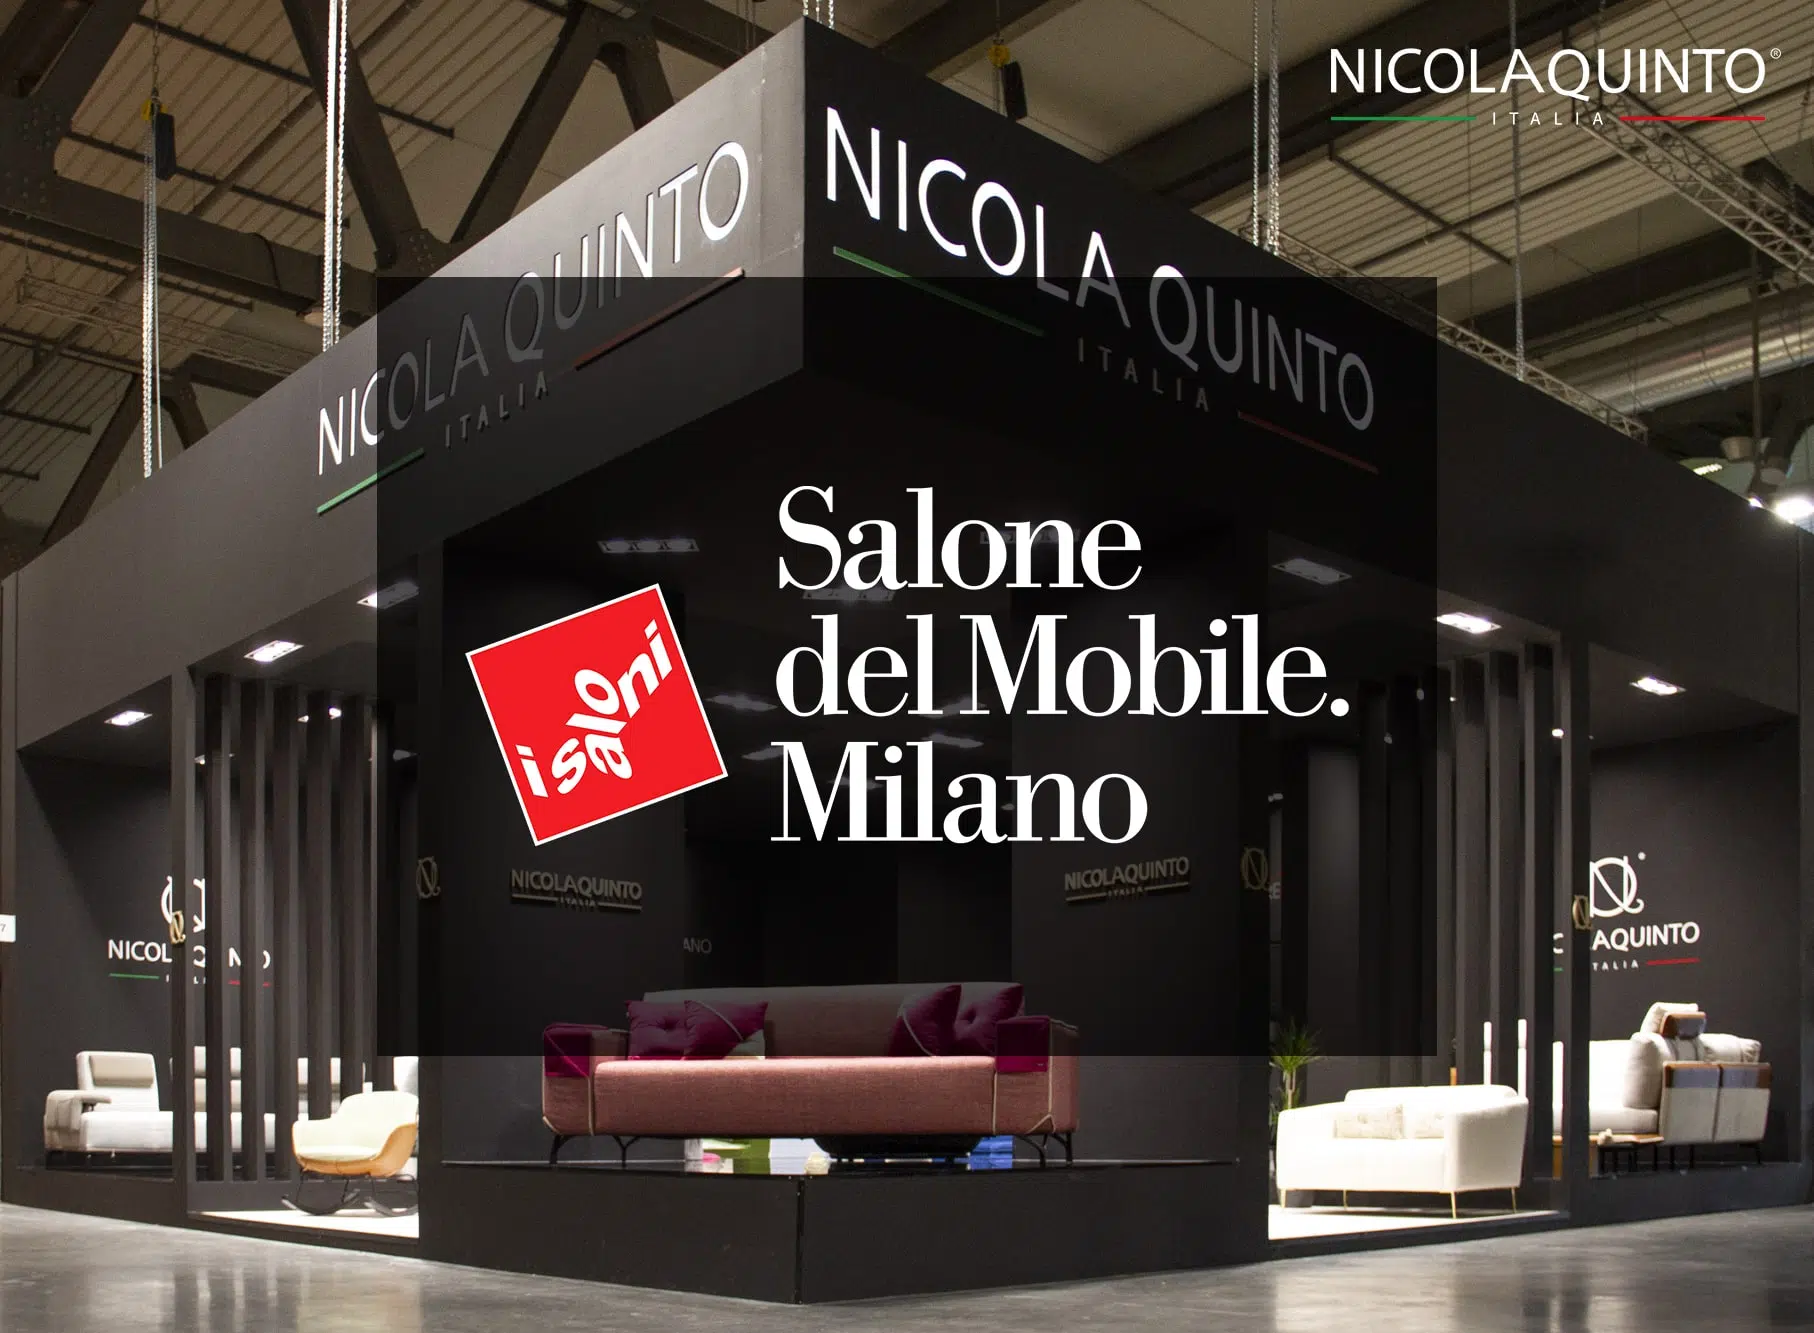 ข่าวสารและกิจกรรมต่างๆ, ข่าวสารและกิจกรรม, NICOLAQUINTO ITALIA